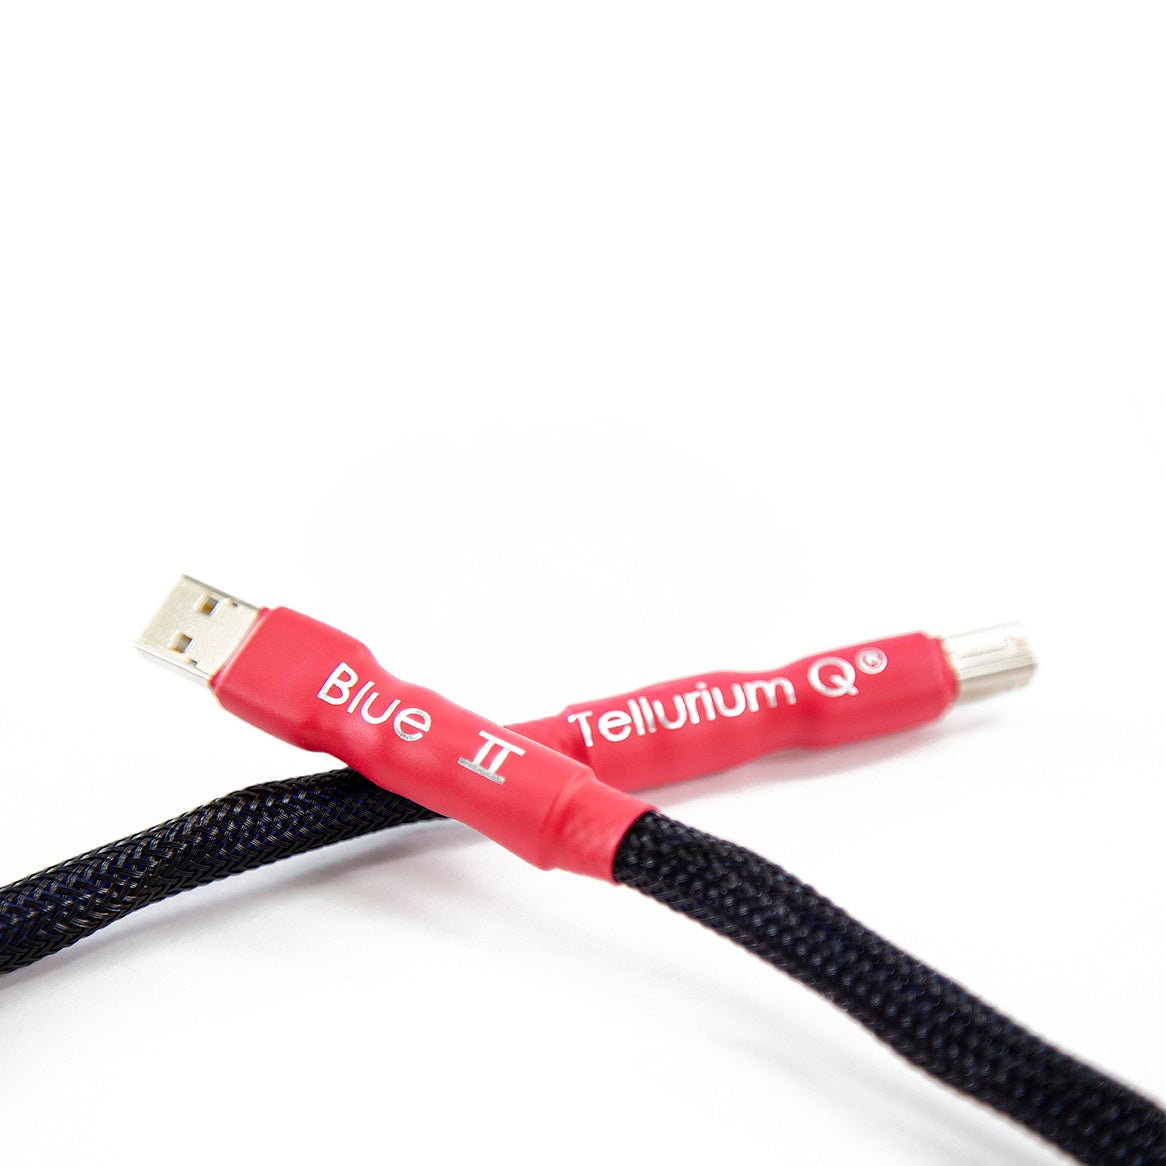 Tellurium Q Blue II USB Cable